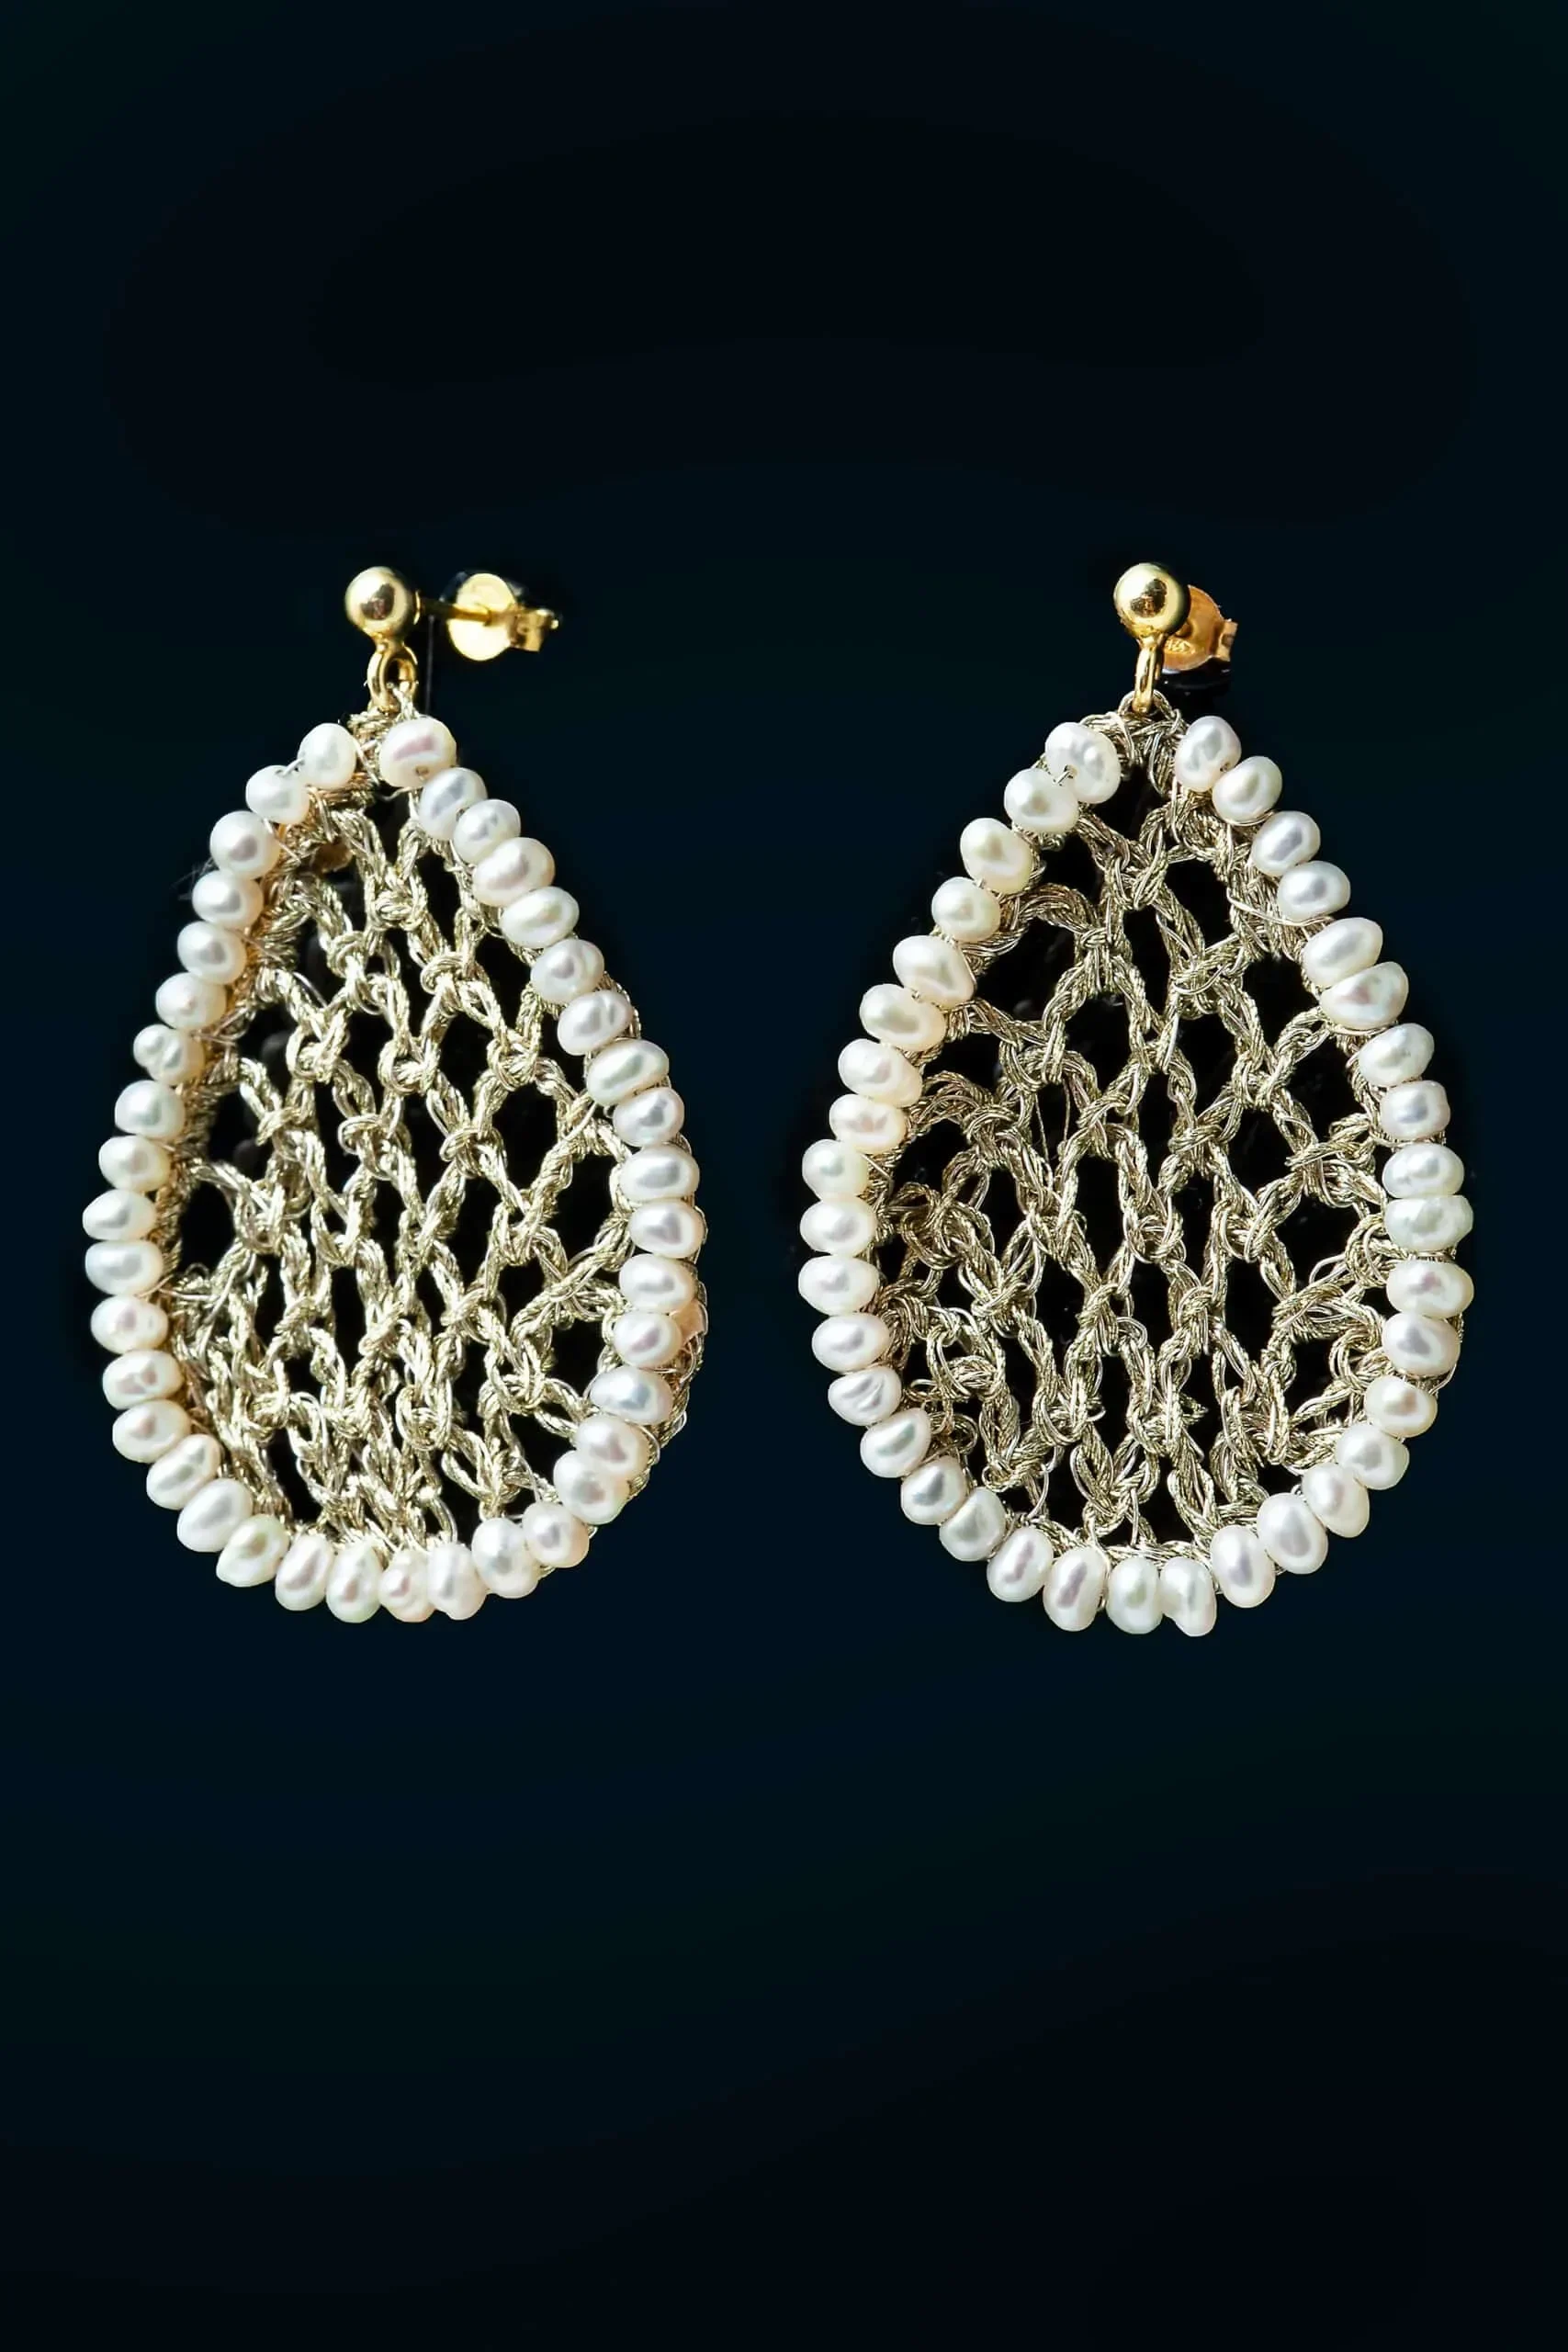 Handmade Jewellery | Teardrop crochet knit silver earrings with pearls gallery 2